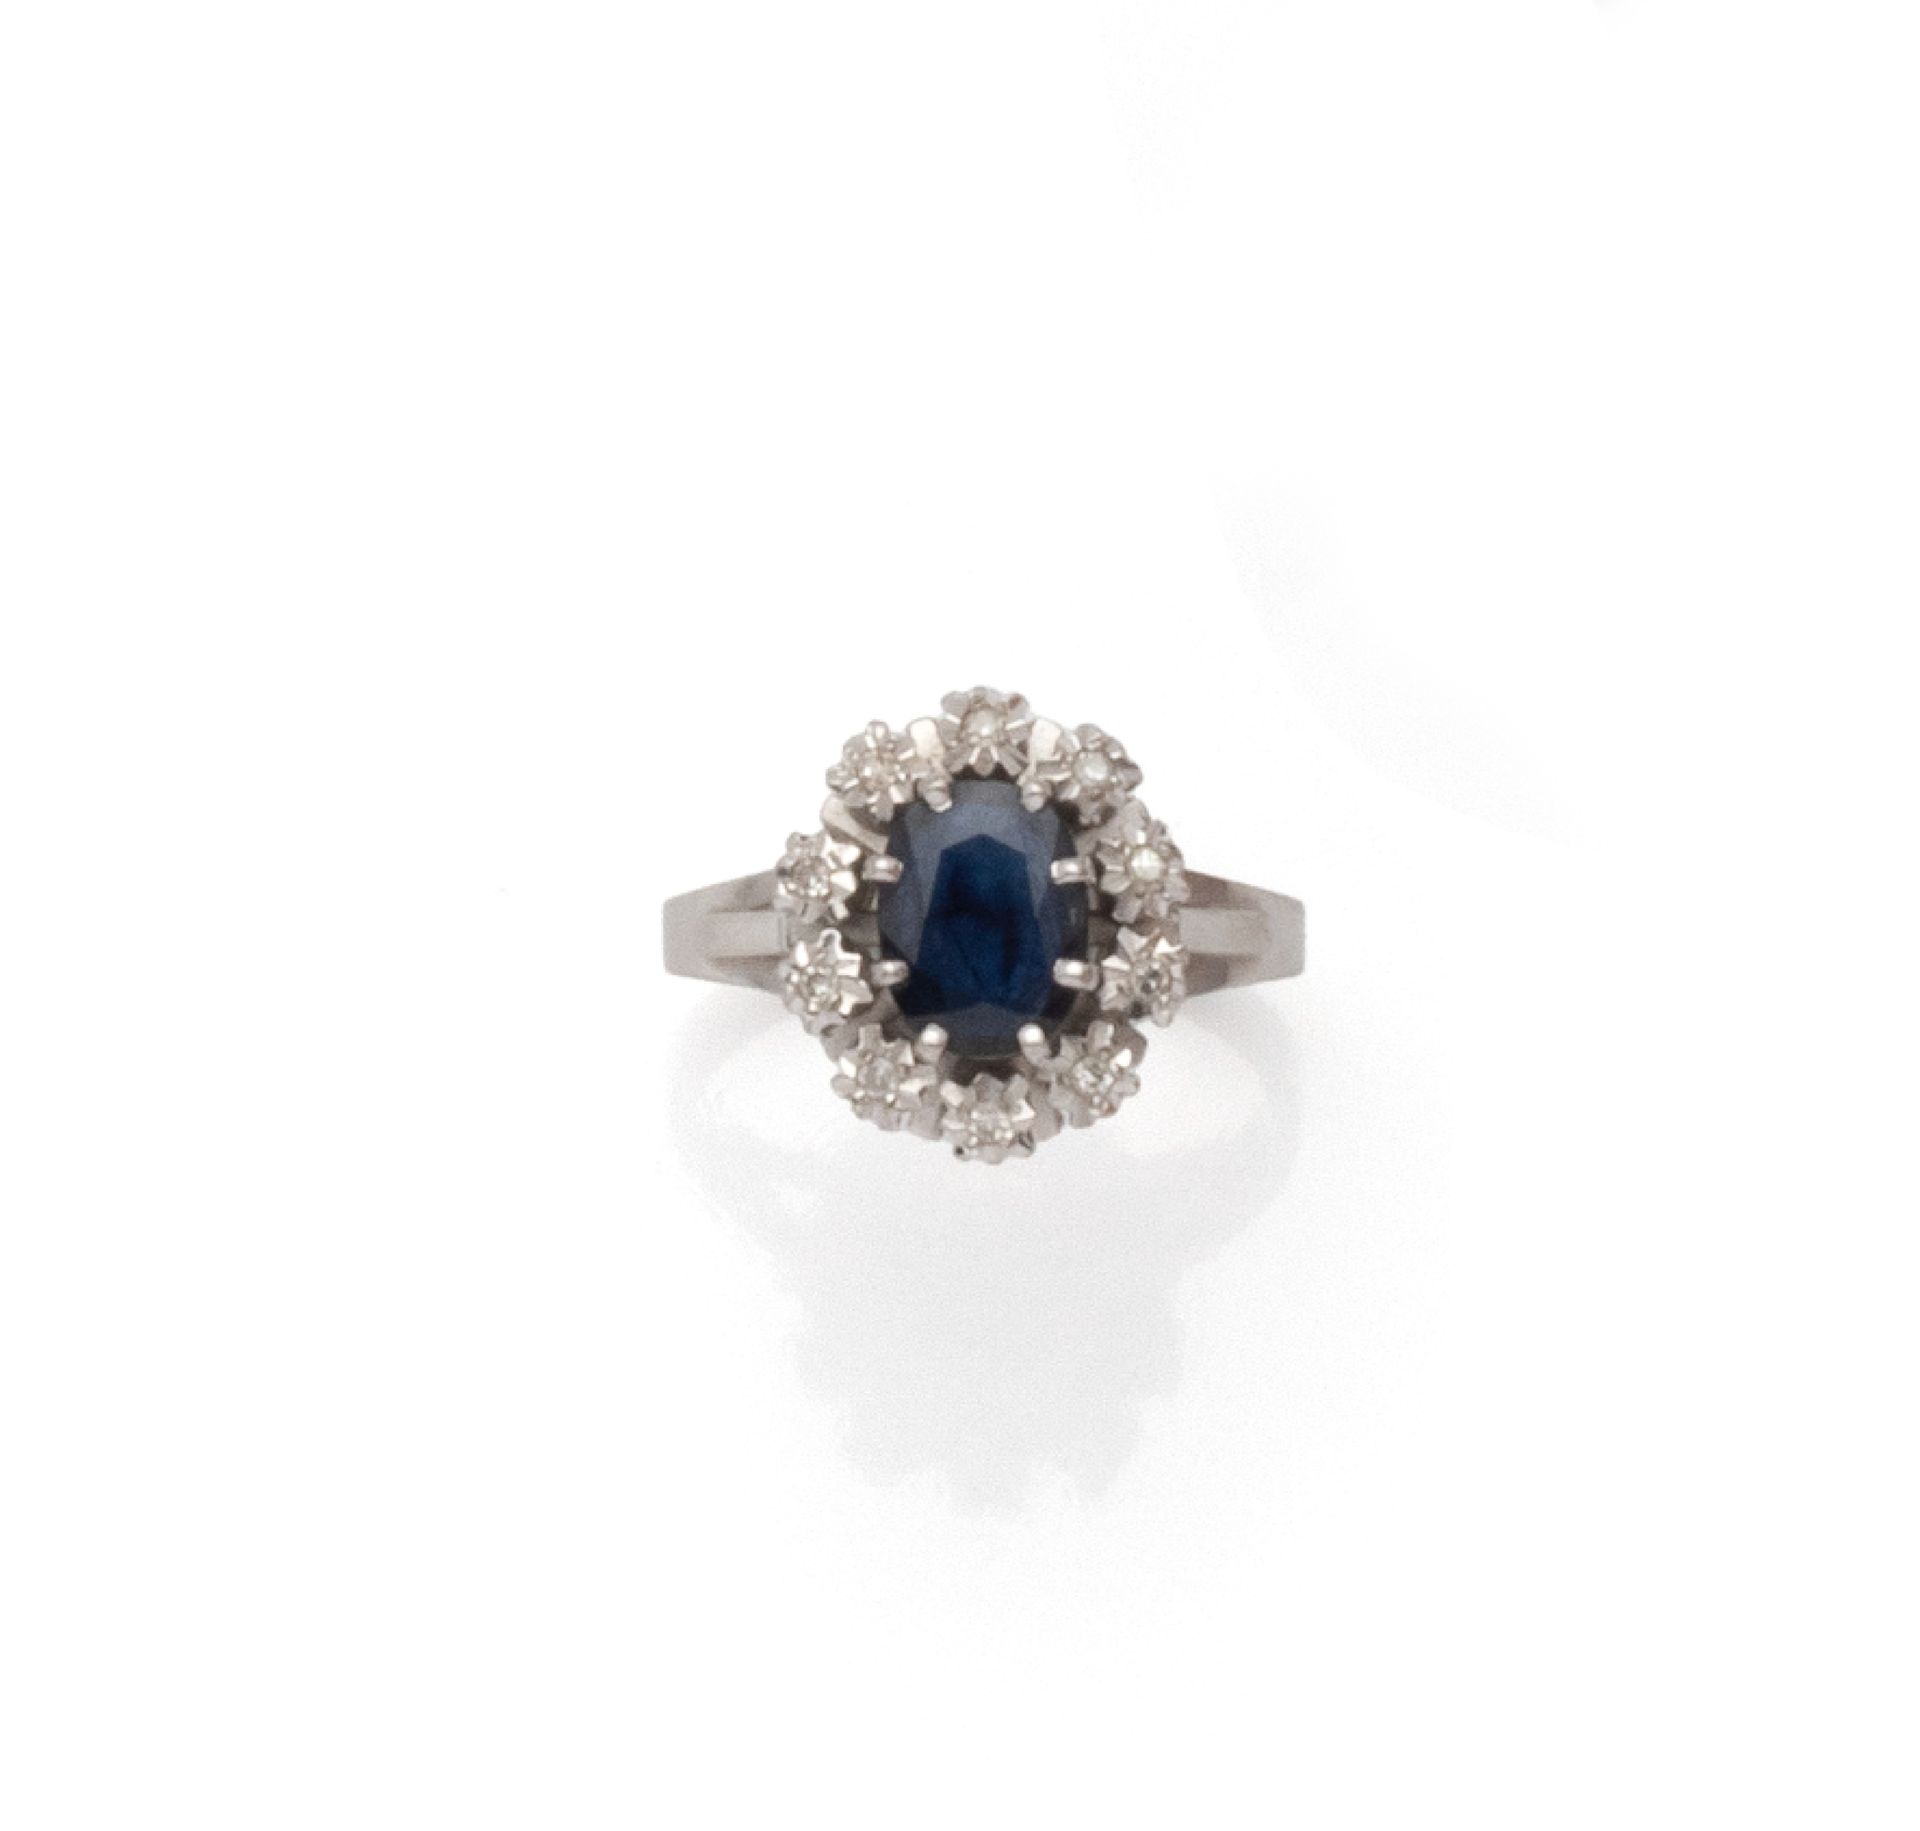 Null 一枚18K（750/1000）白金蓬巴杜戒指，镶有一颗爪式镶嵌的椭圆形蓝宝石，并镶嵌有10颗8/8钻石的星形底座。挡板上有一圈雪花纹装饰。

法国的工&hellip;